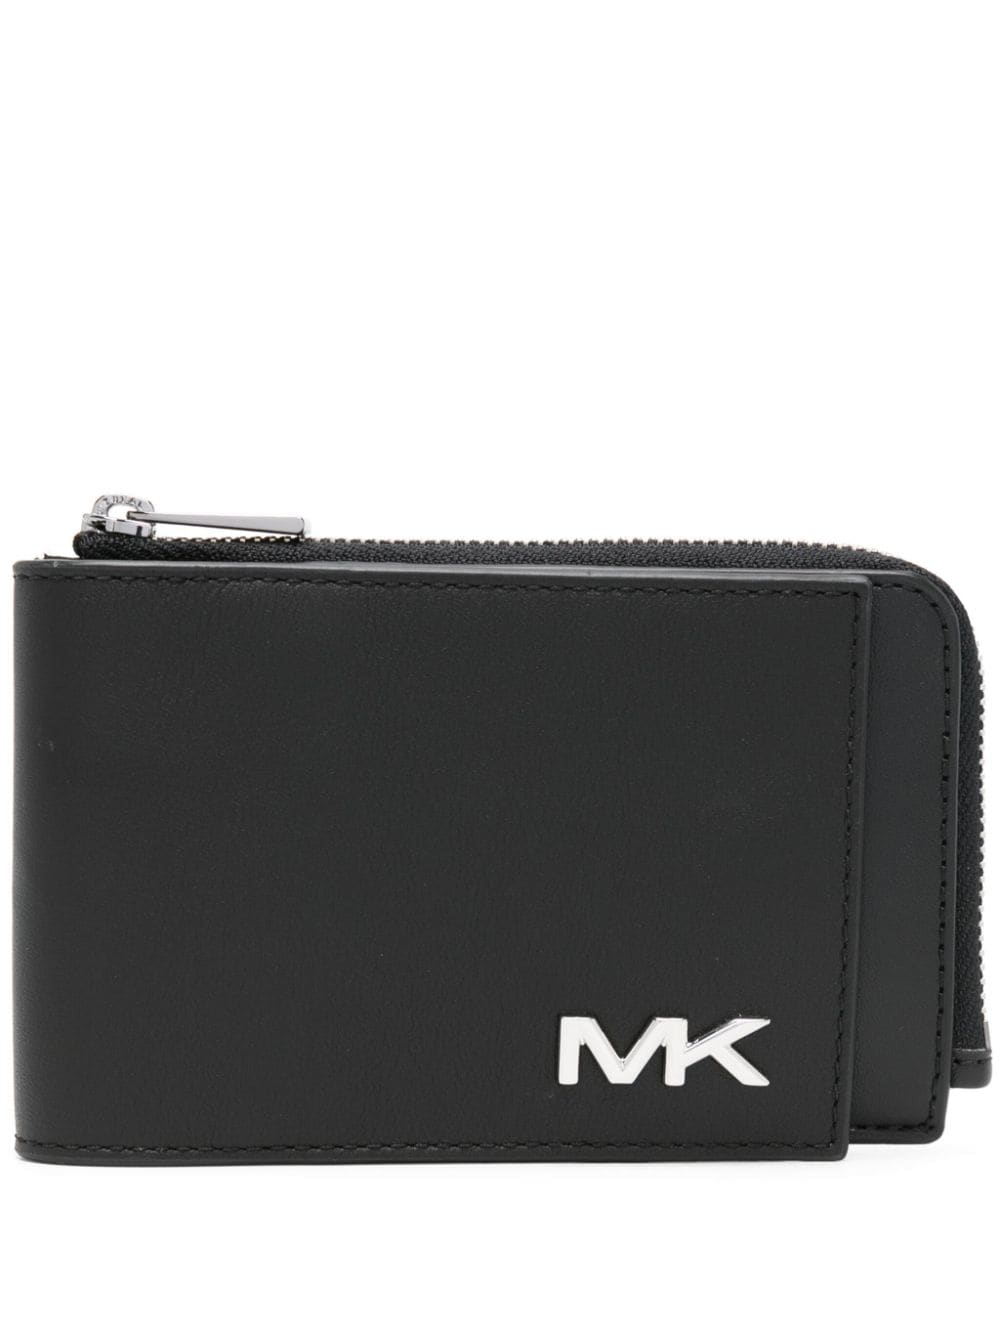 Michael Kors logo-plaque leather wallet - Black von Michael Kors